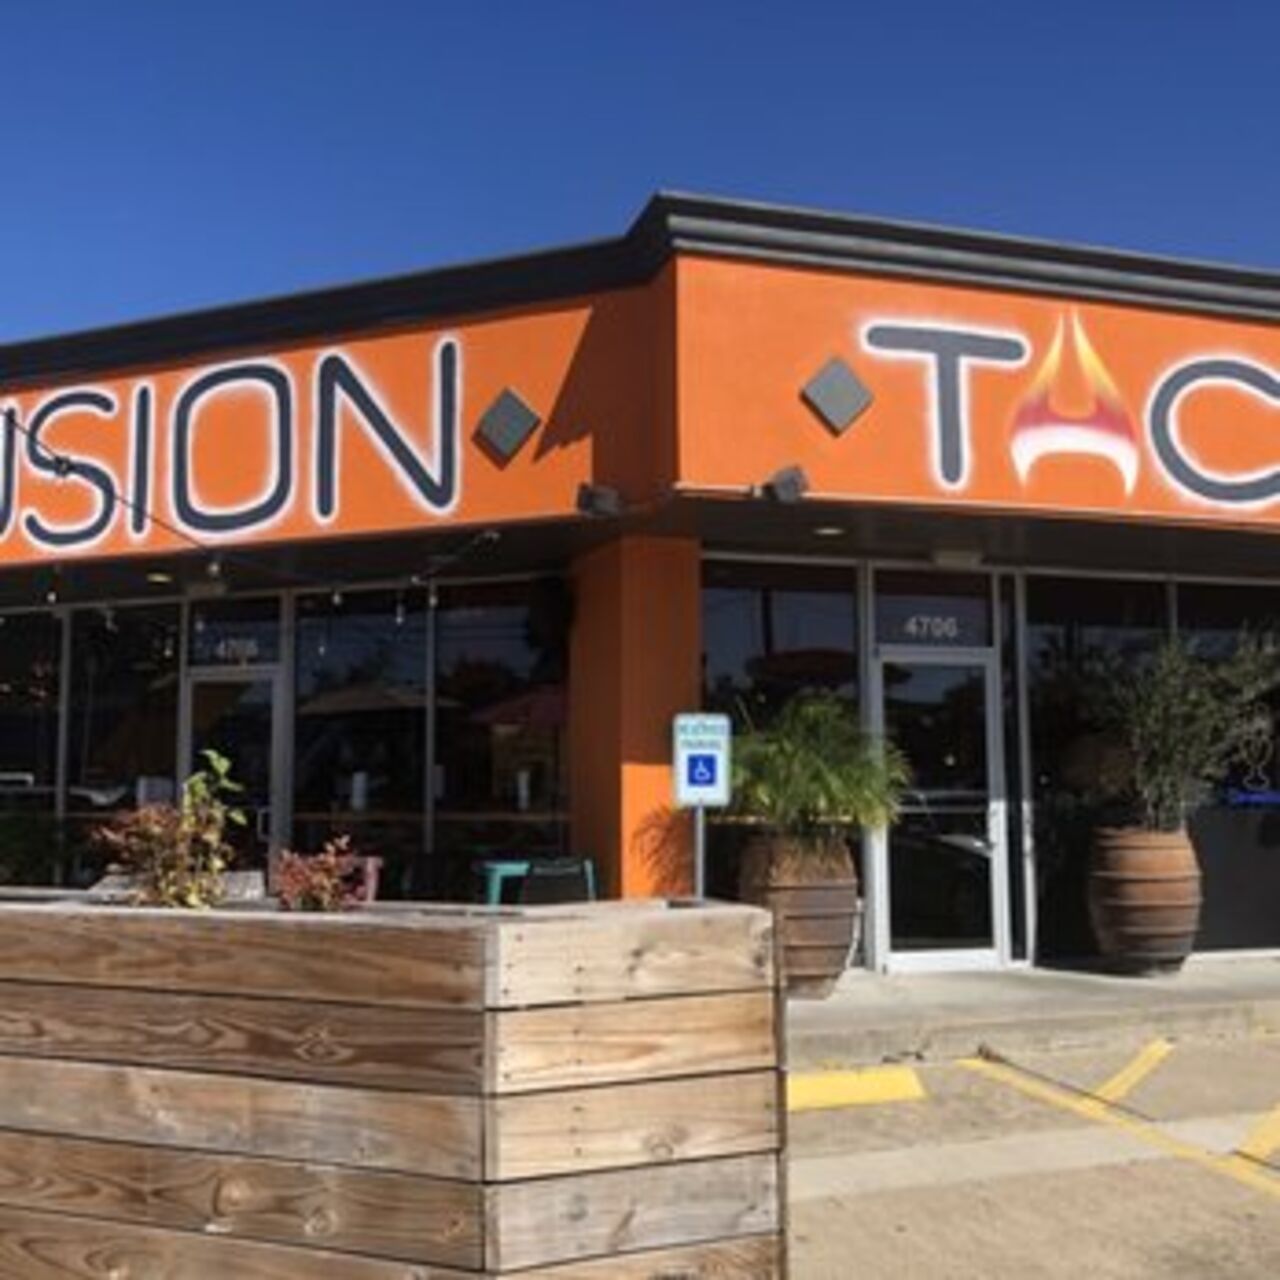 A photo of Fusion Taco